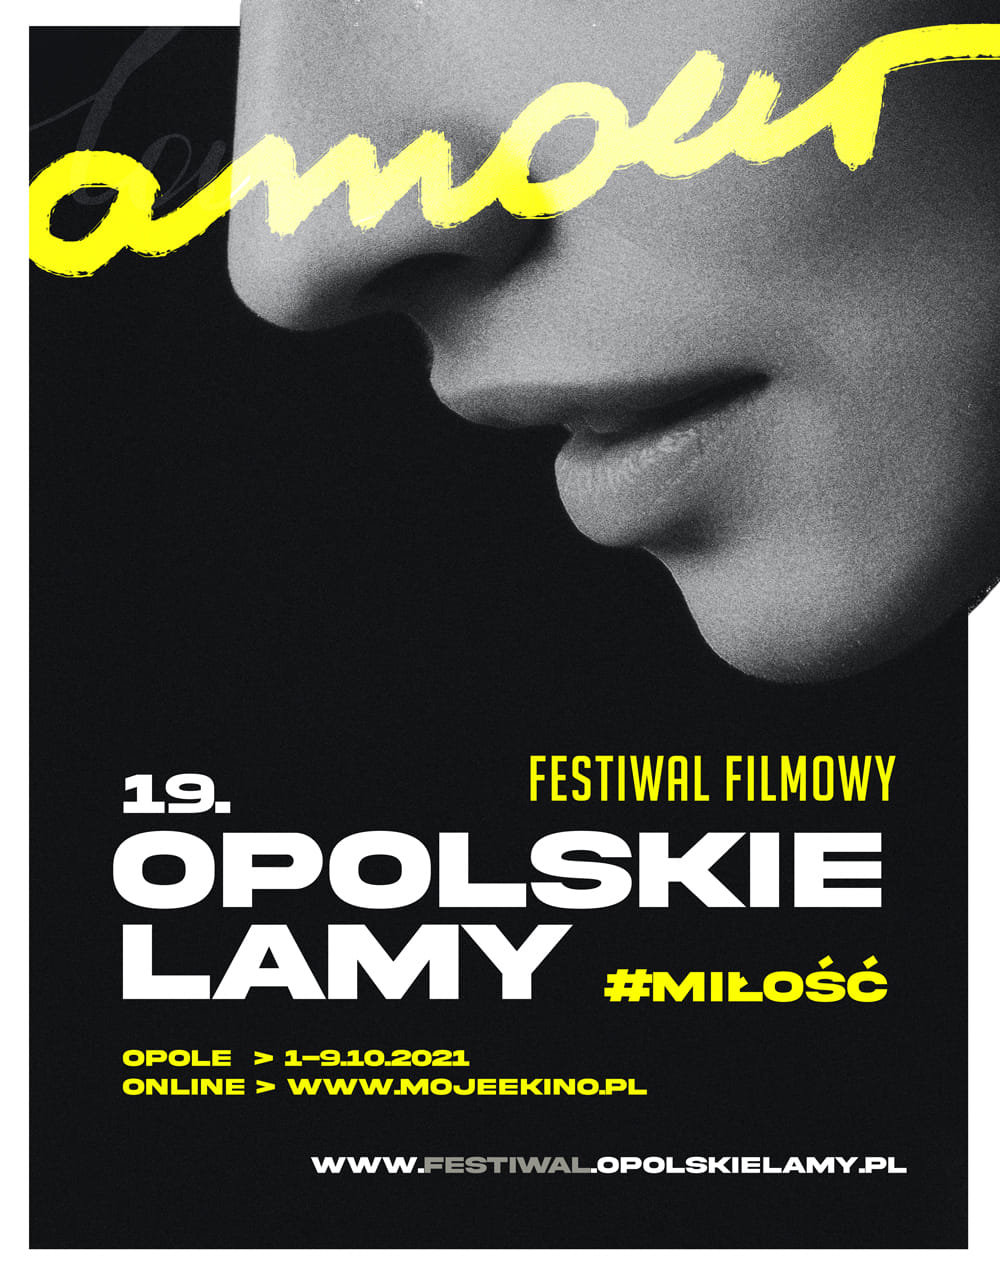 Przed nami 19. edycja Festiwalu Filmowego Opolskie Lamy